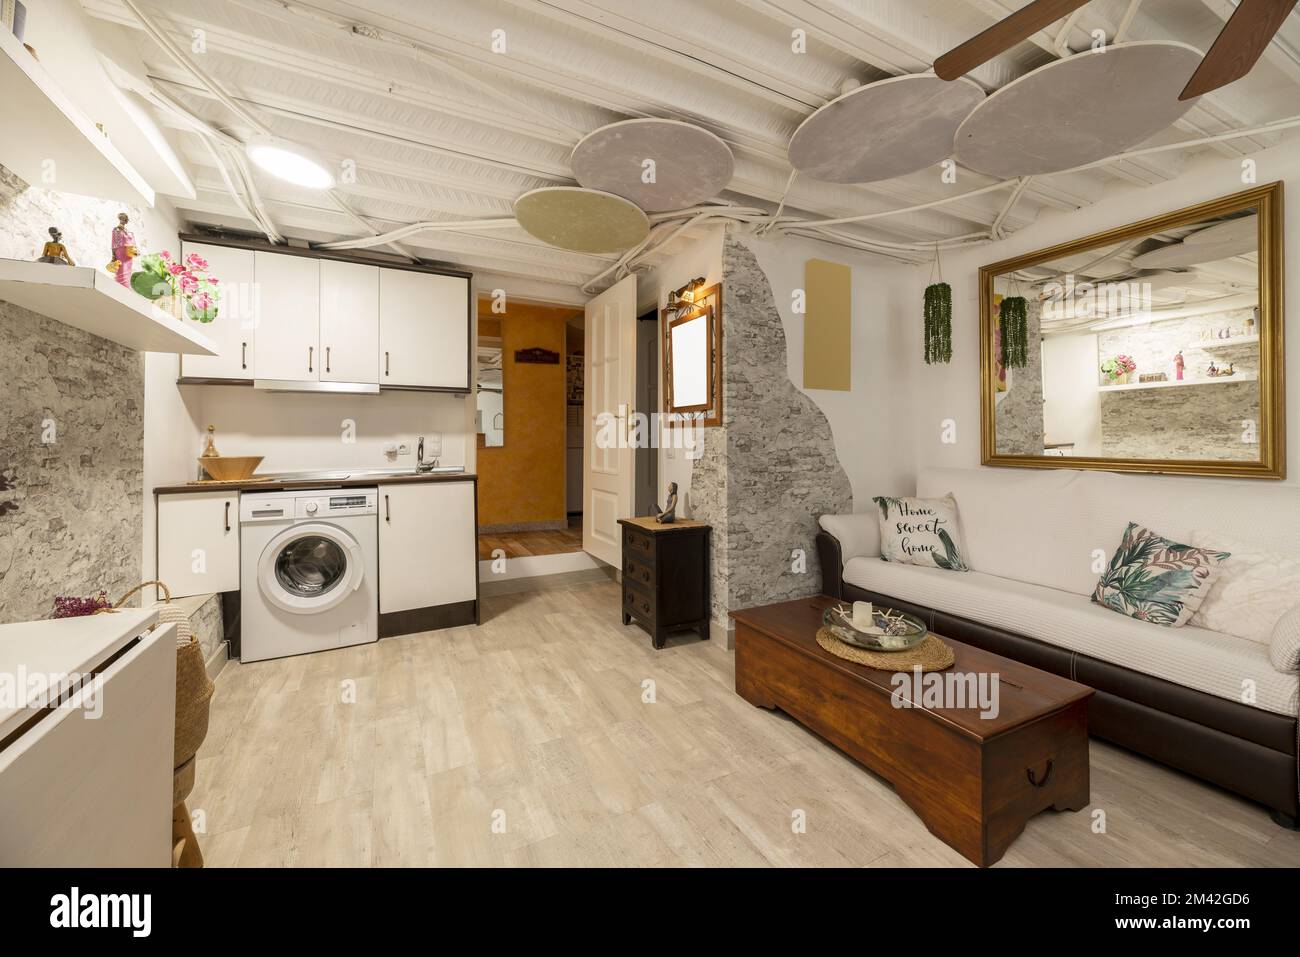 Ce studio comprend une kitchenette dans un coin et un salon avec un canapé deux tons et un grand miroir au cadre doré Banque D'Images